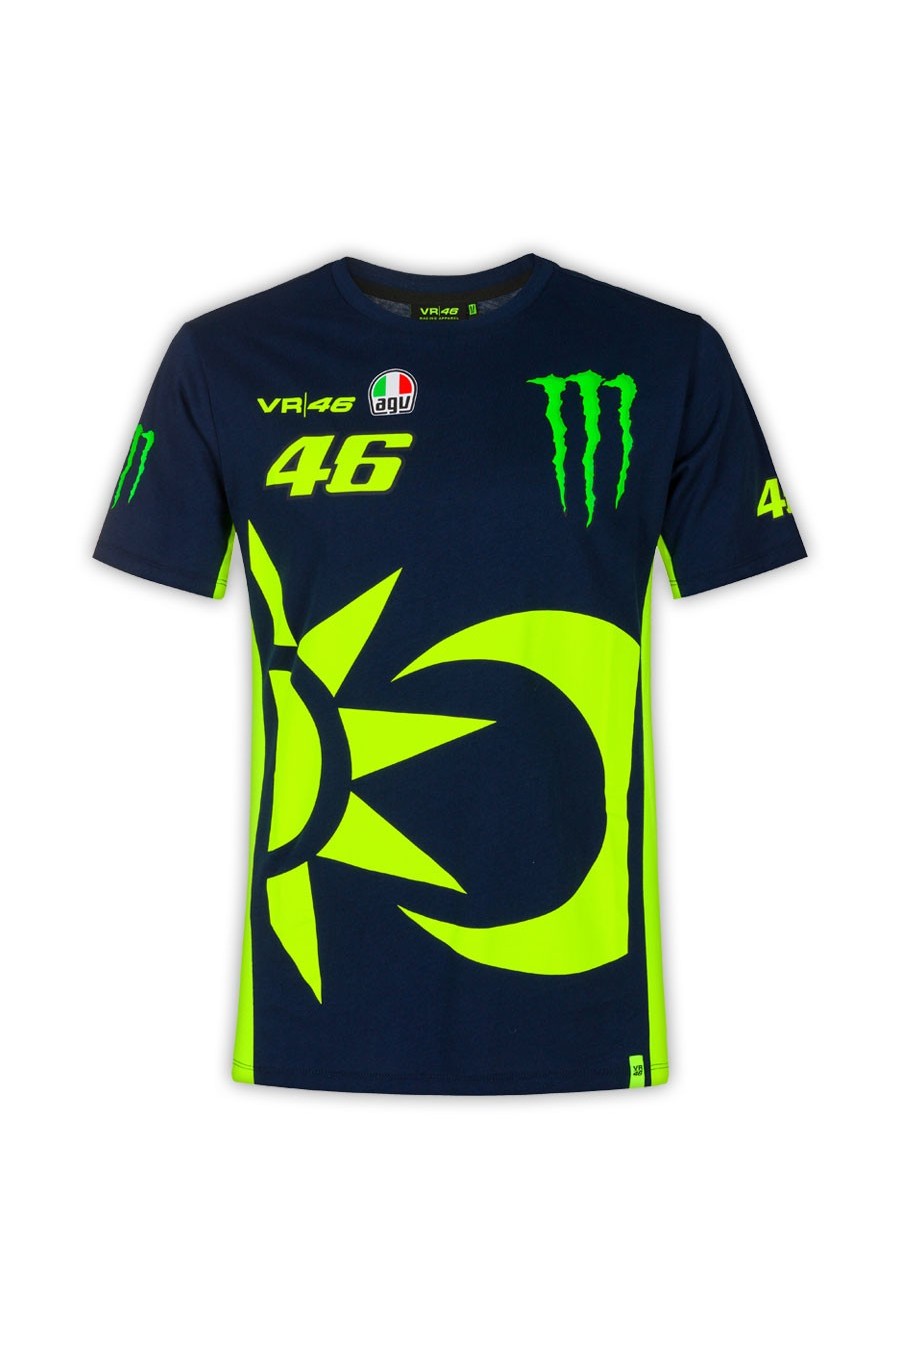 Valentino Rossi 46 Replica T-Shirt